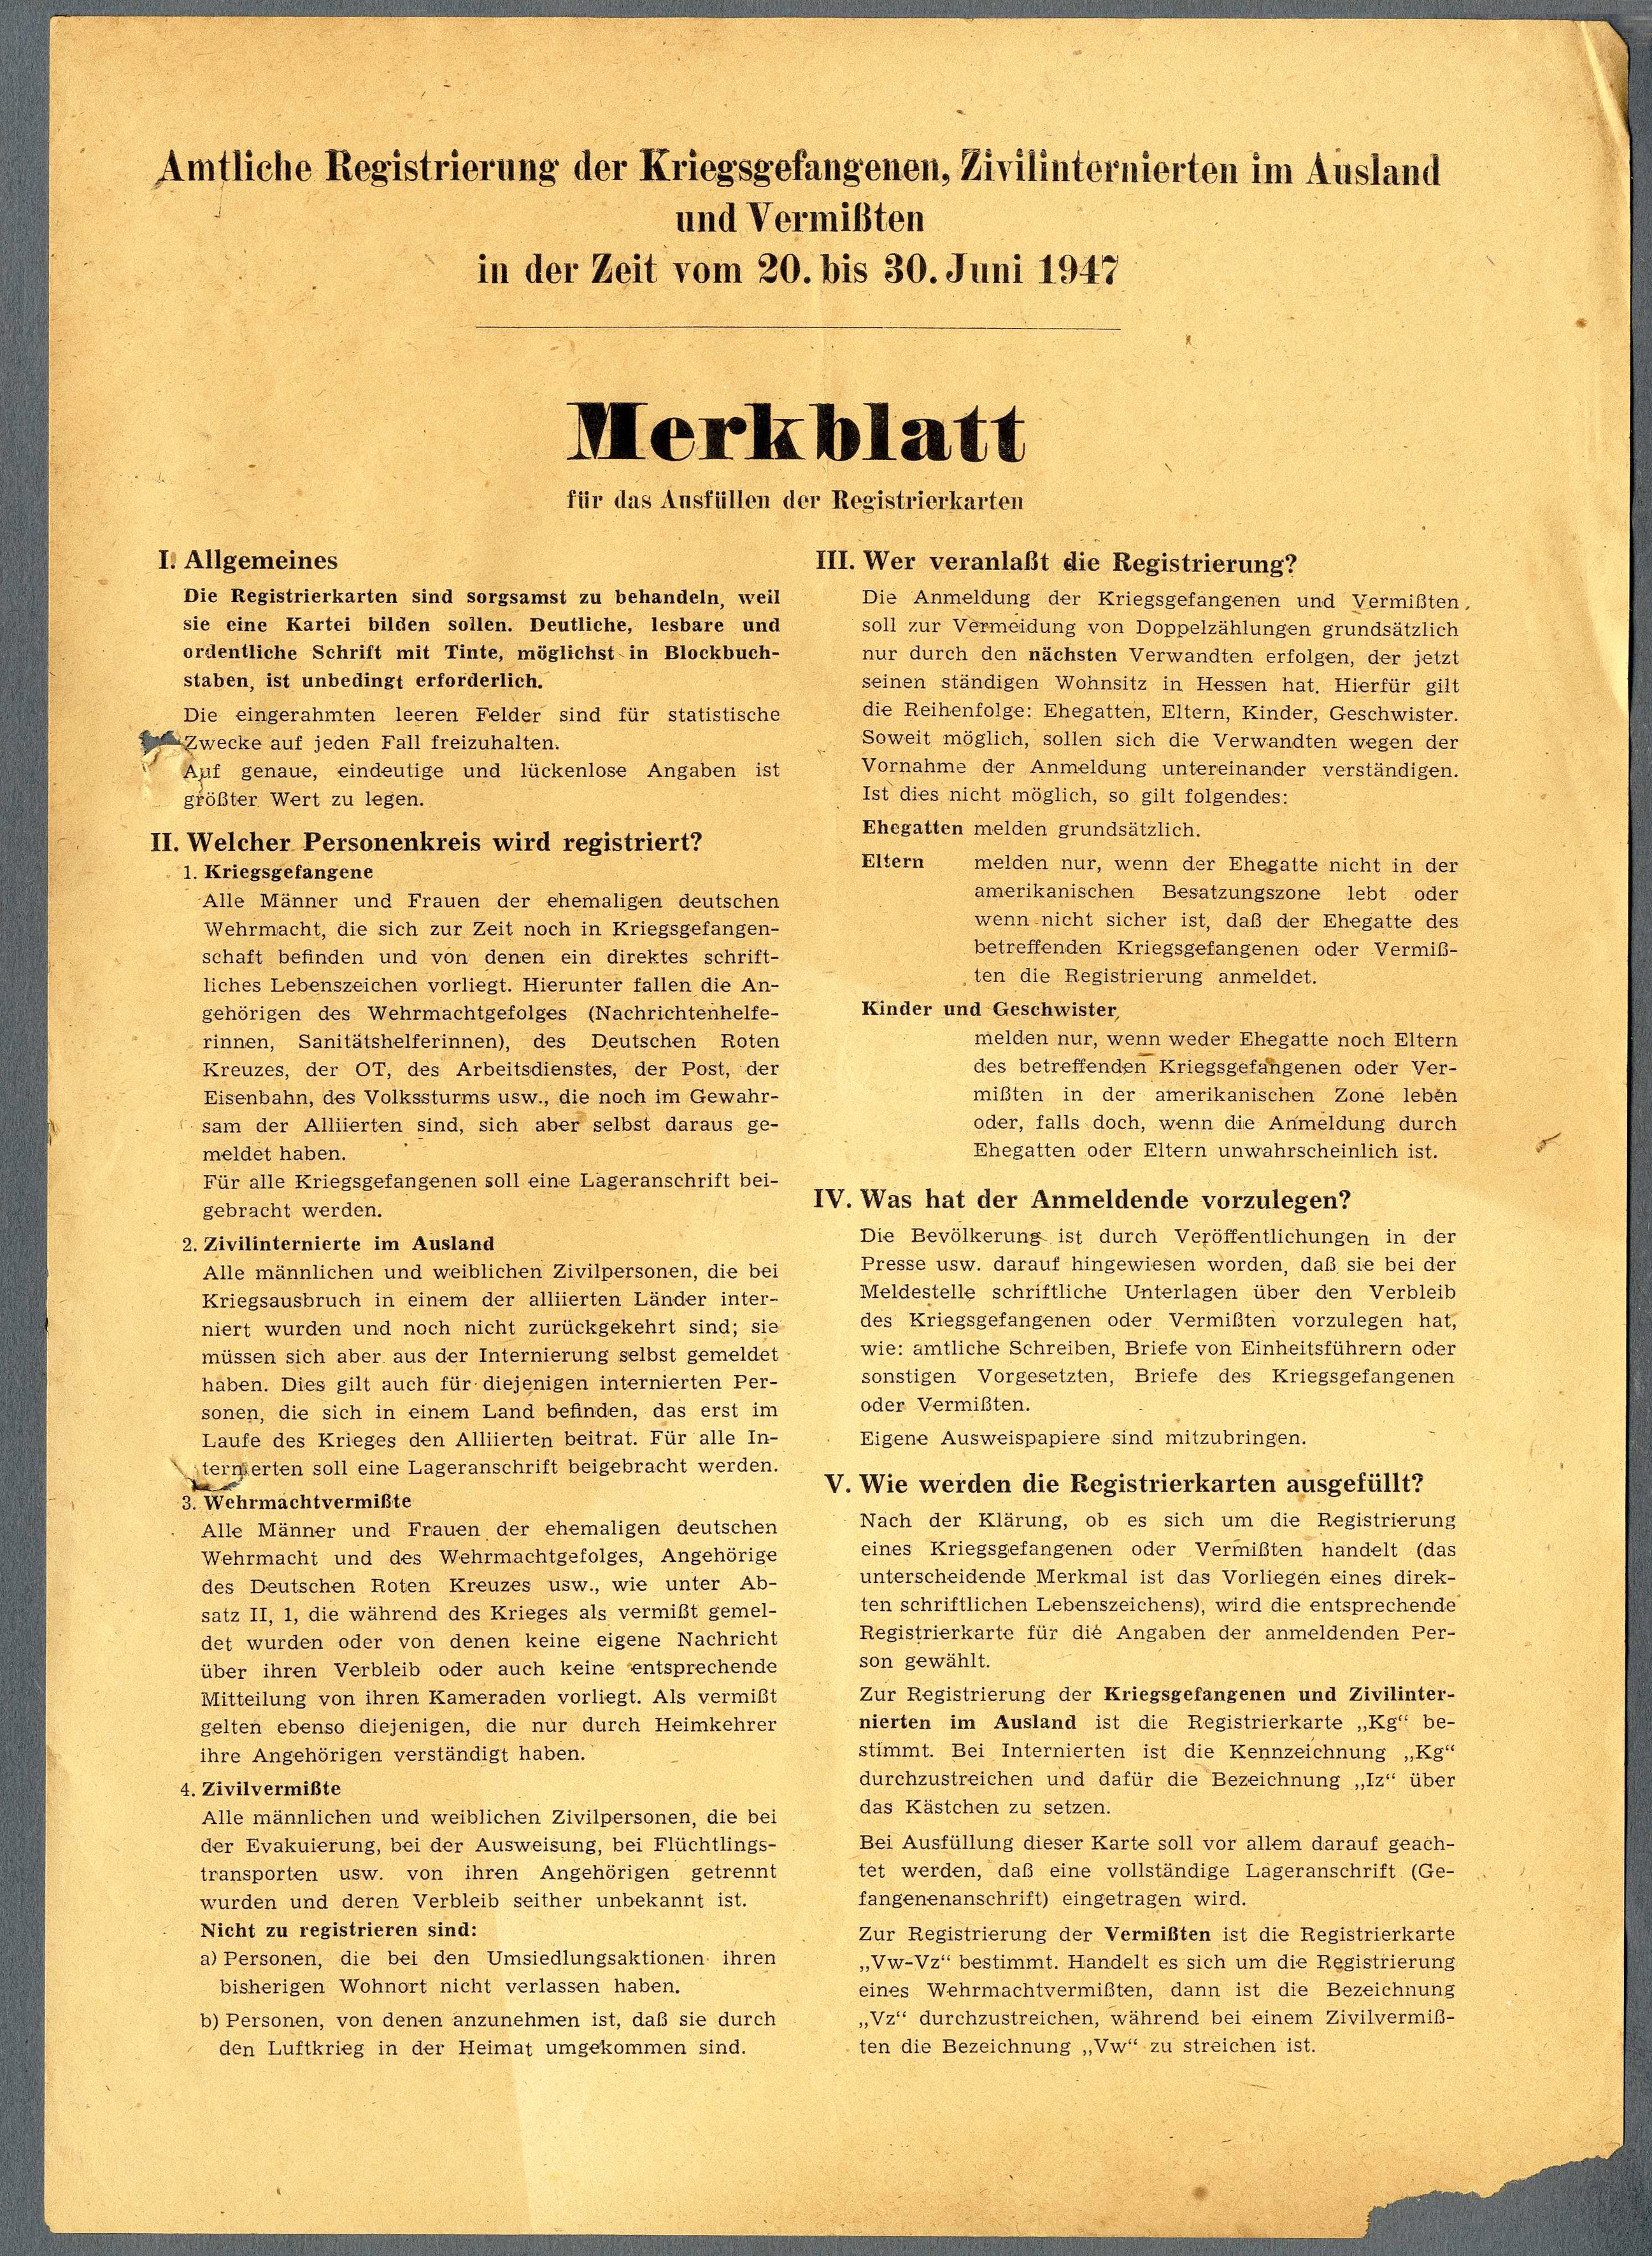 Merkblatt zur Registrierung von Kriegsgefangenen, Zivilinternierten und Vermissten' (Werra-Kalibergbau-Museum, Heringen/W. CC BY-NC-SA)